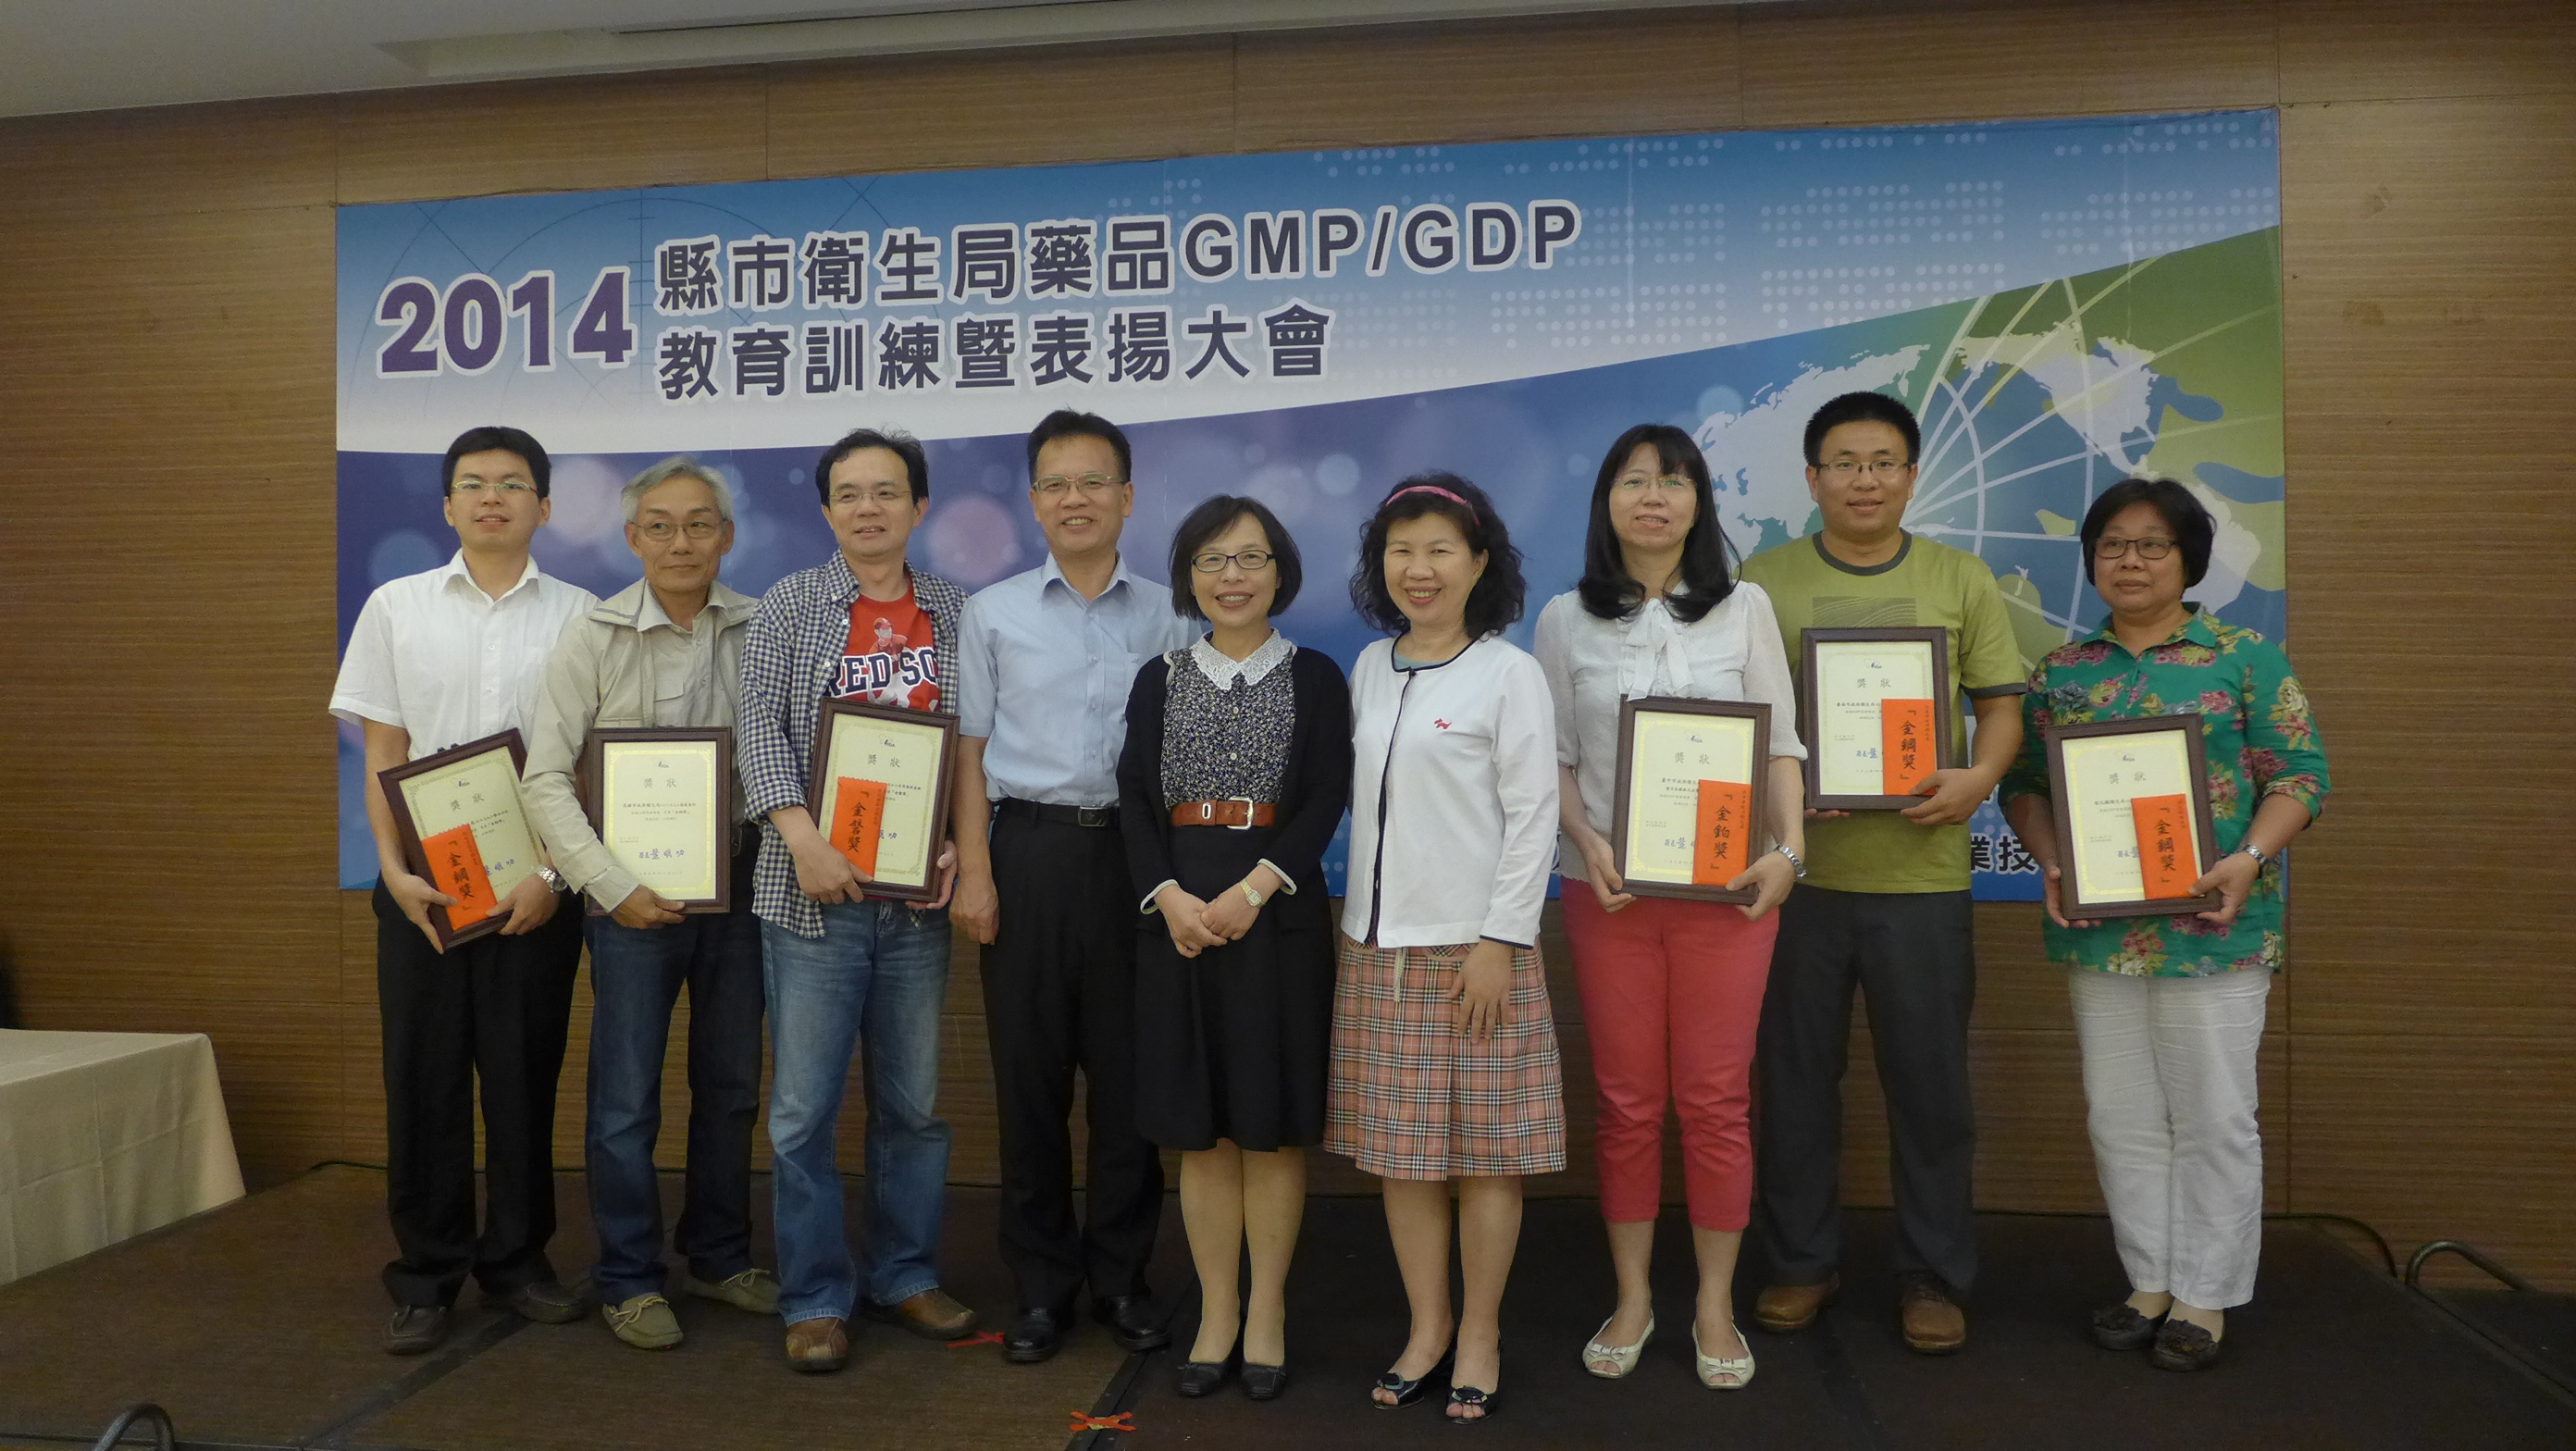 2014年縣市衛生局藥品GMP/GDP教育訓練暨表揚大會-照片